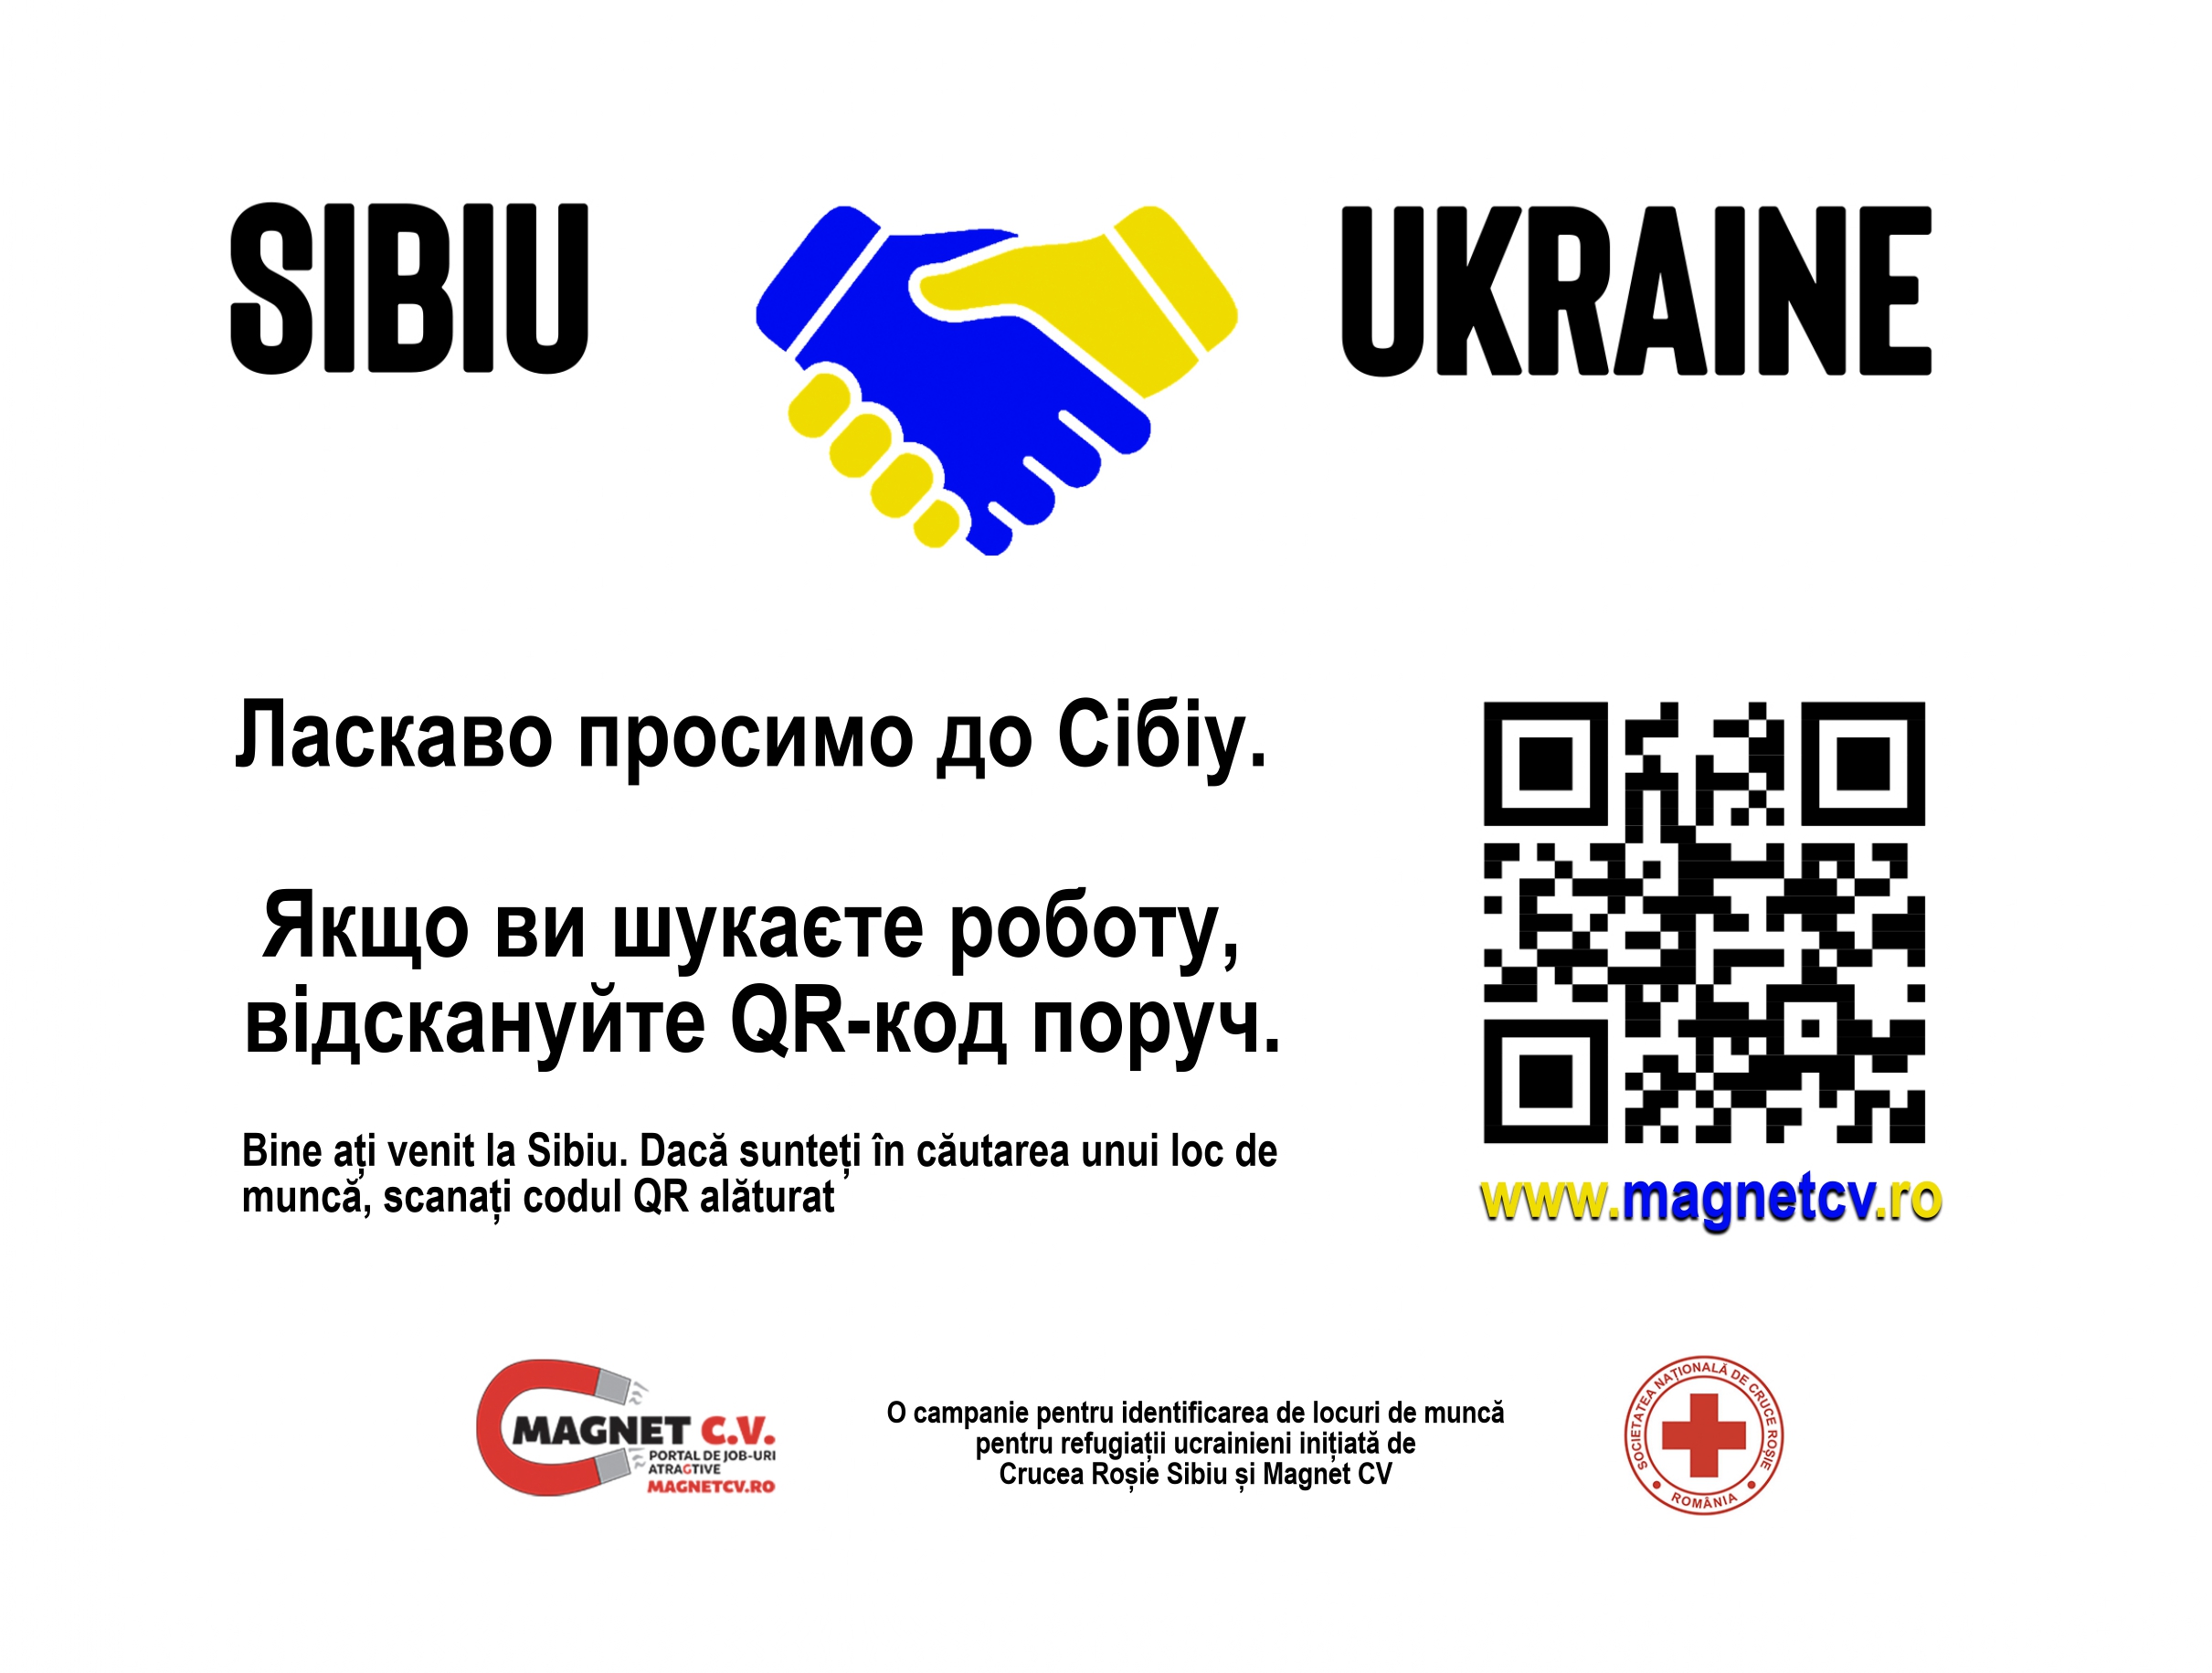 Parteneriat între Magnet CV și Crucea Roșie Sibiu. Zeci de locuri de muncă pentru refugiații ucraineni din orașul nostru